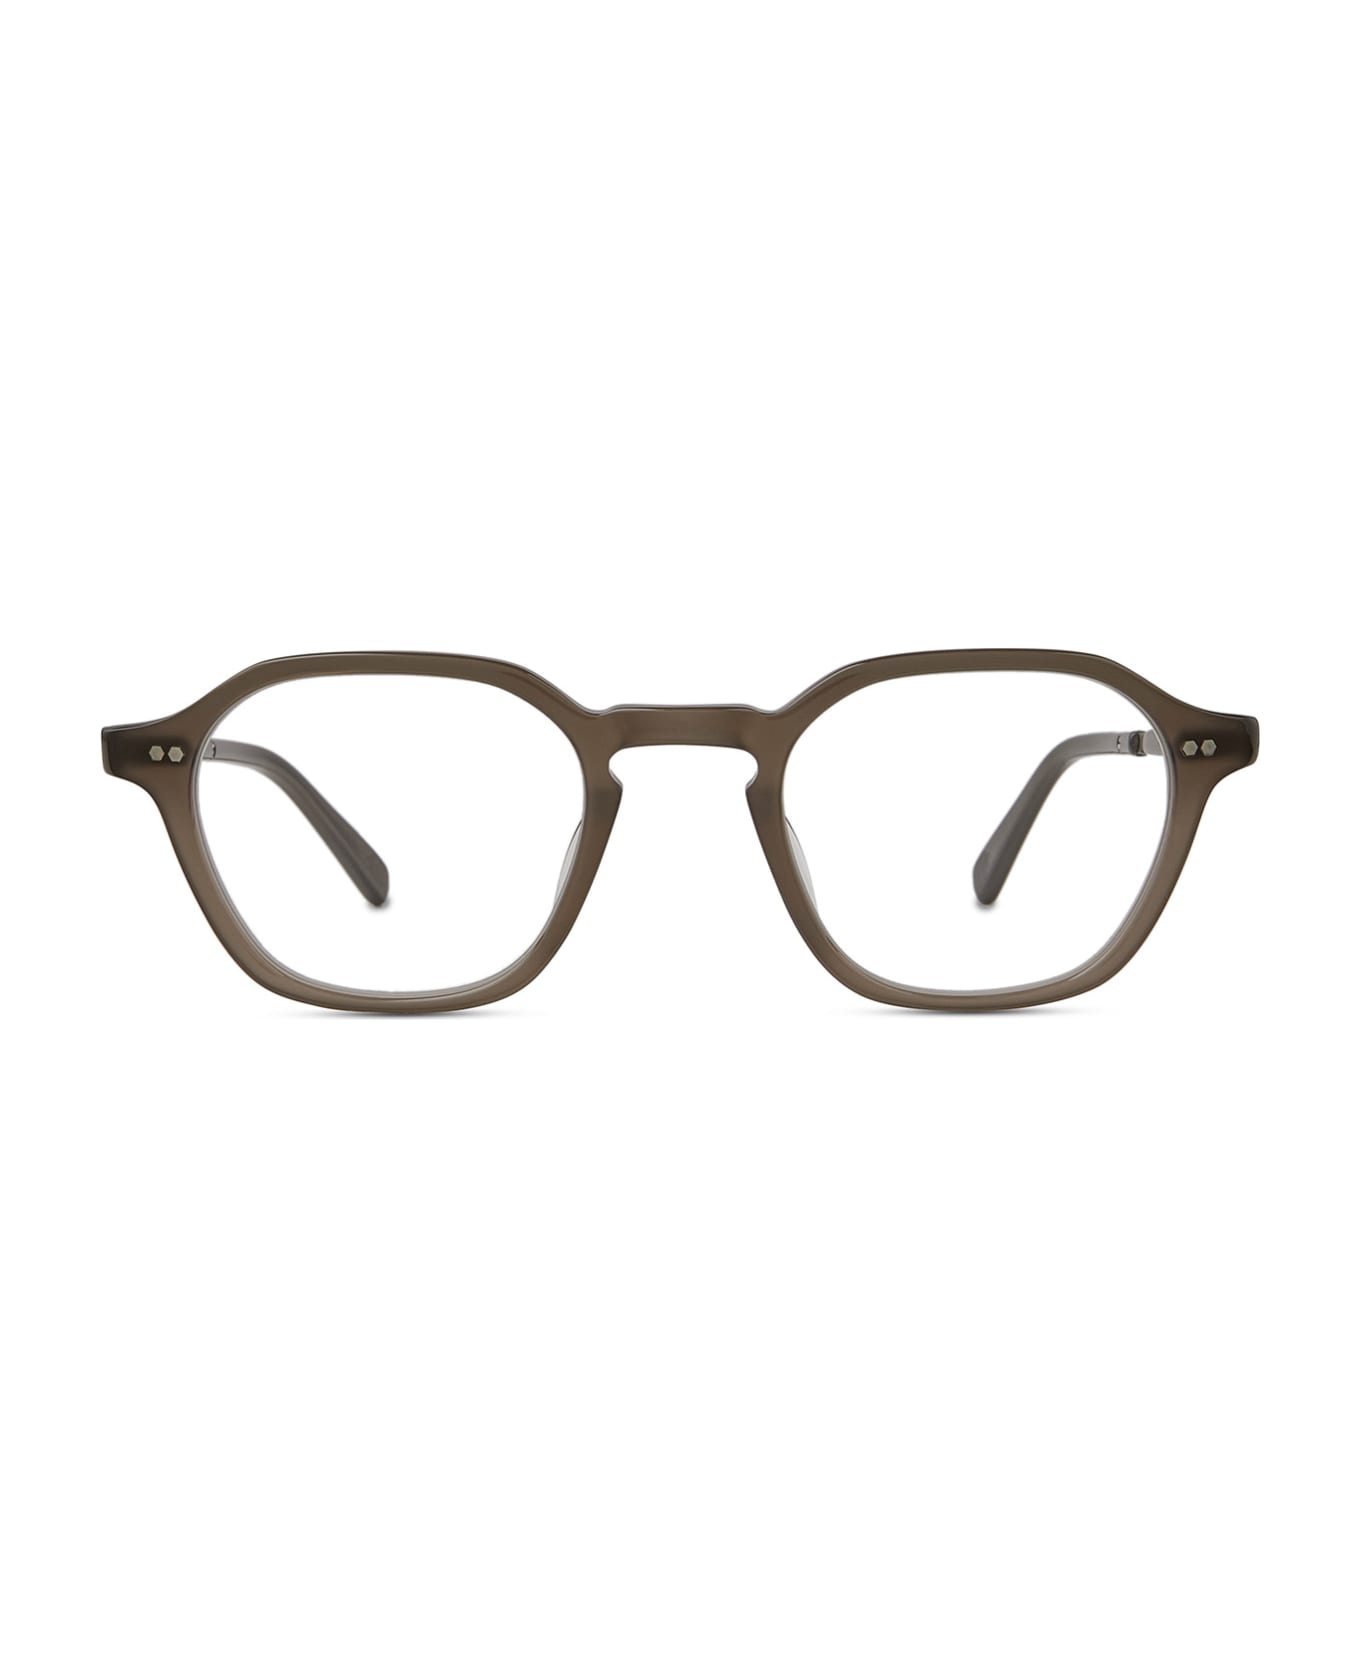 Mr. Leight Rell Ii C Truffle-platinum Glasses - Truffle-Platinum